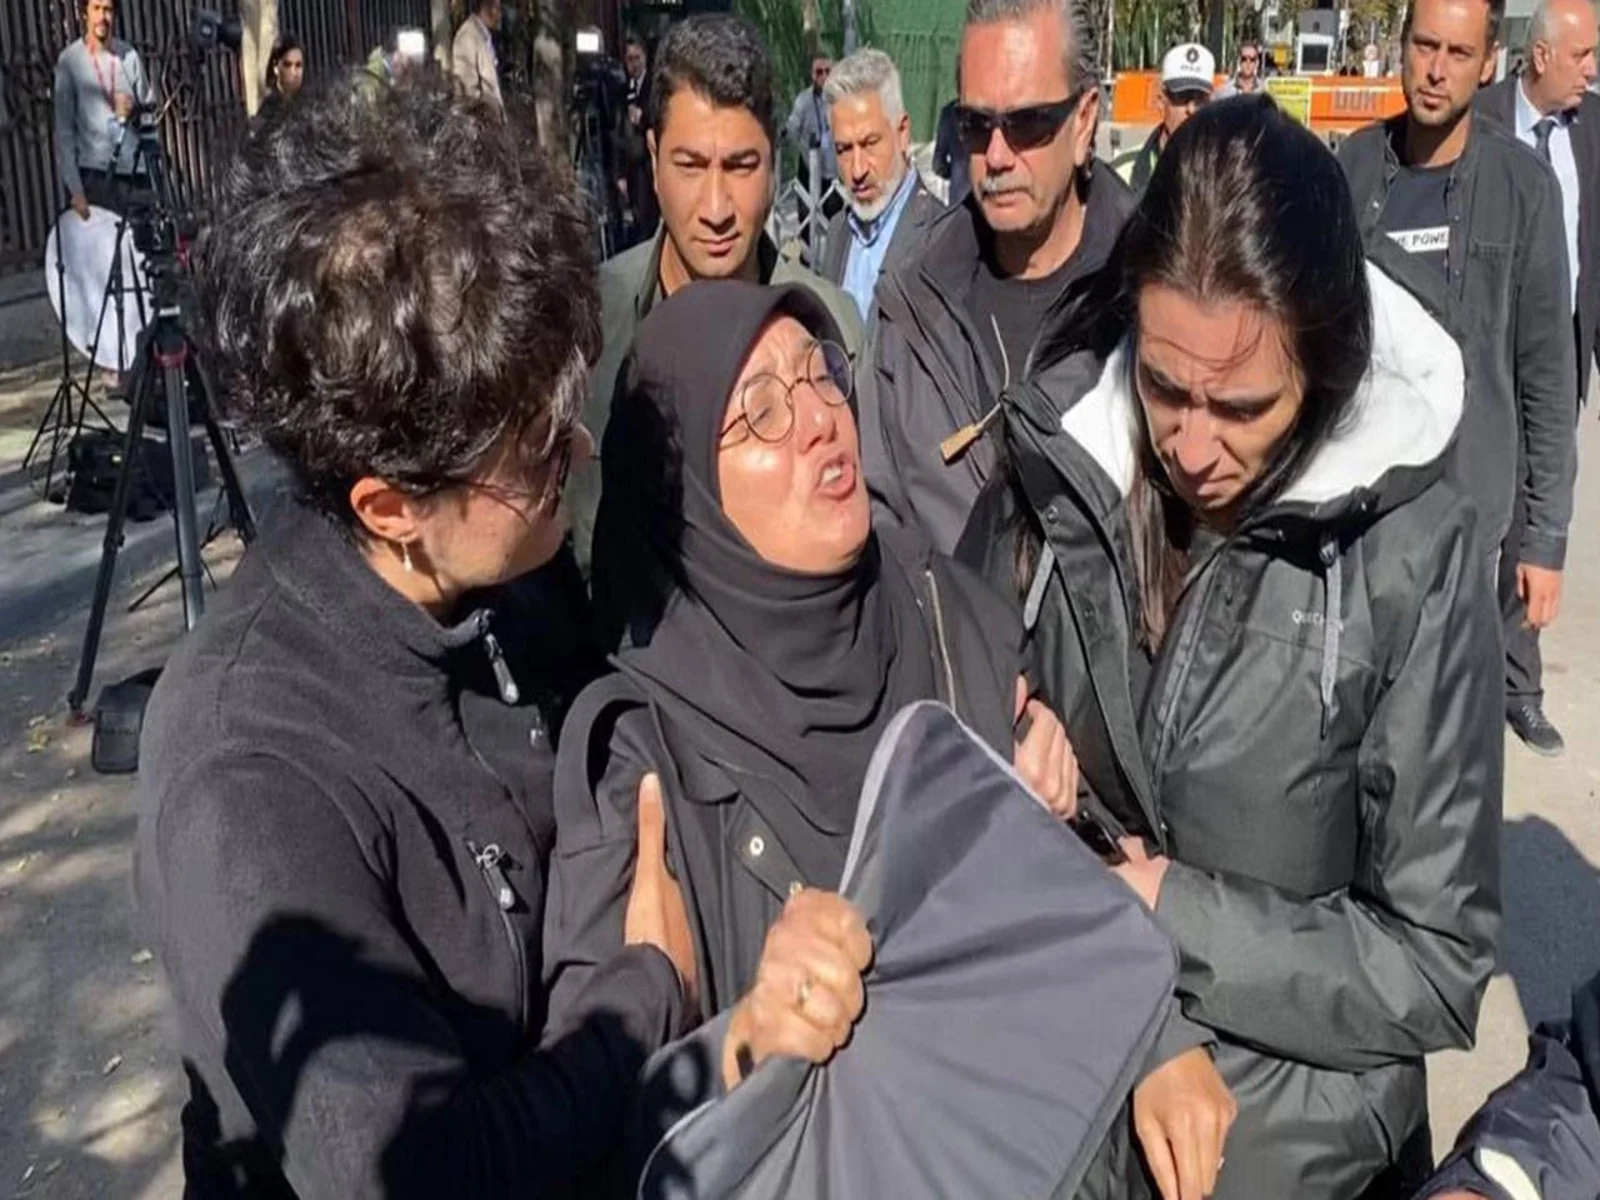 "بلينكن قاتل الأطفال" هتاف سيدة تركية قرب مبنى الخارجية في أنقرة (فيديو)